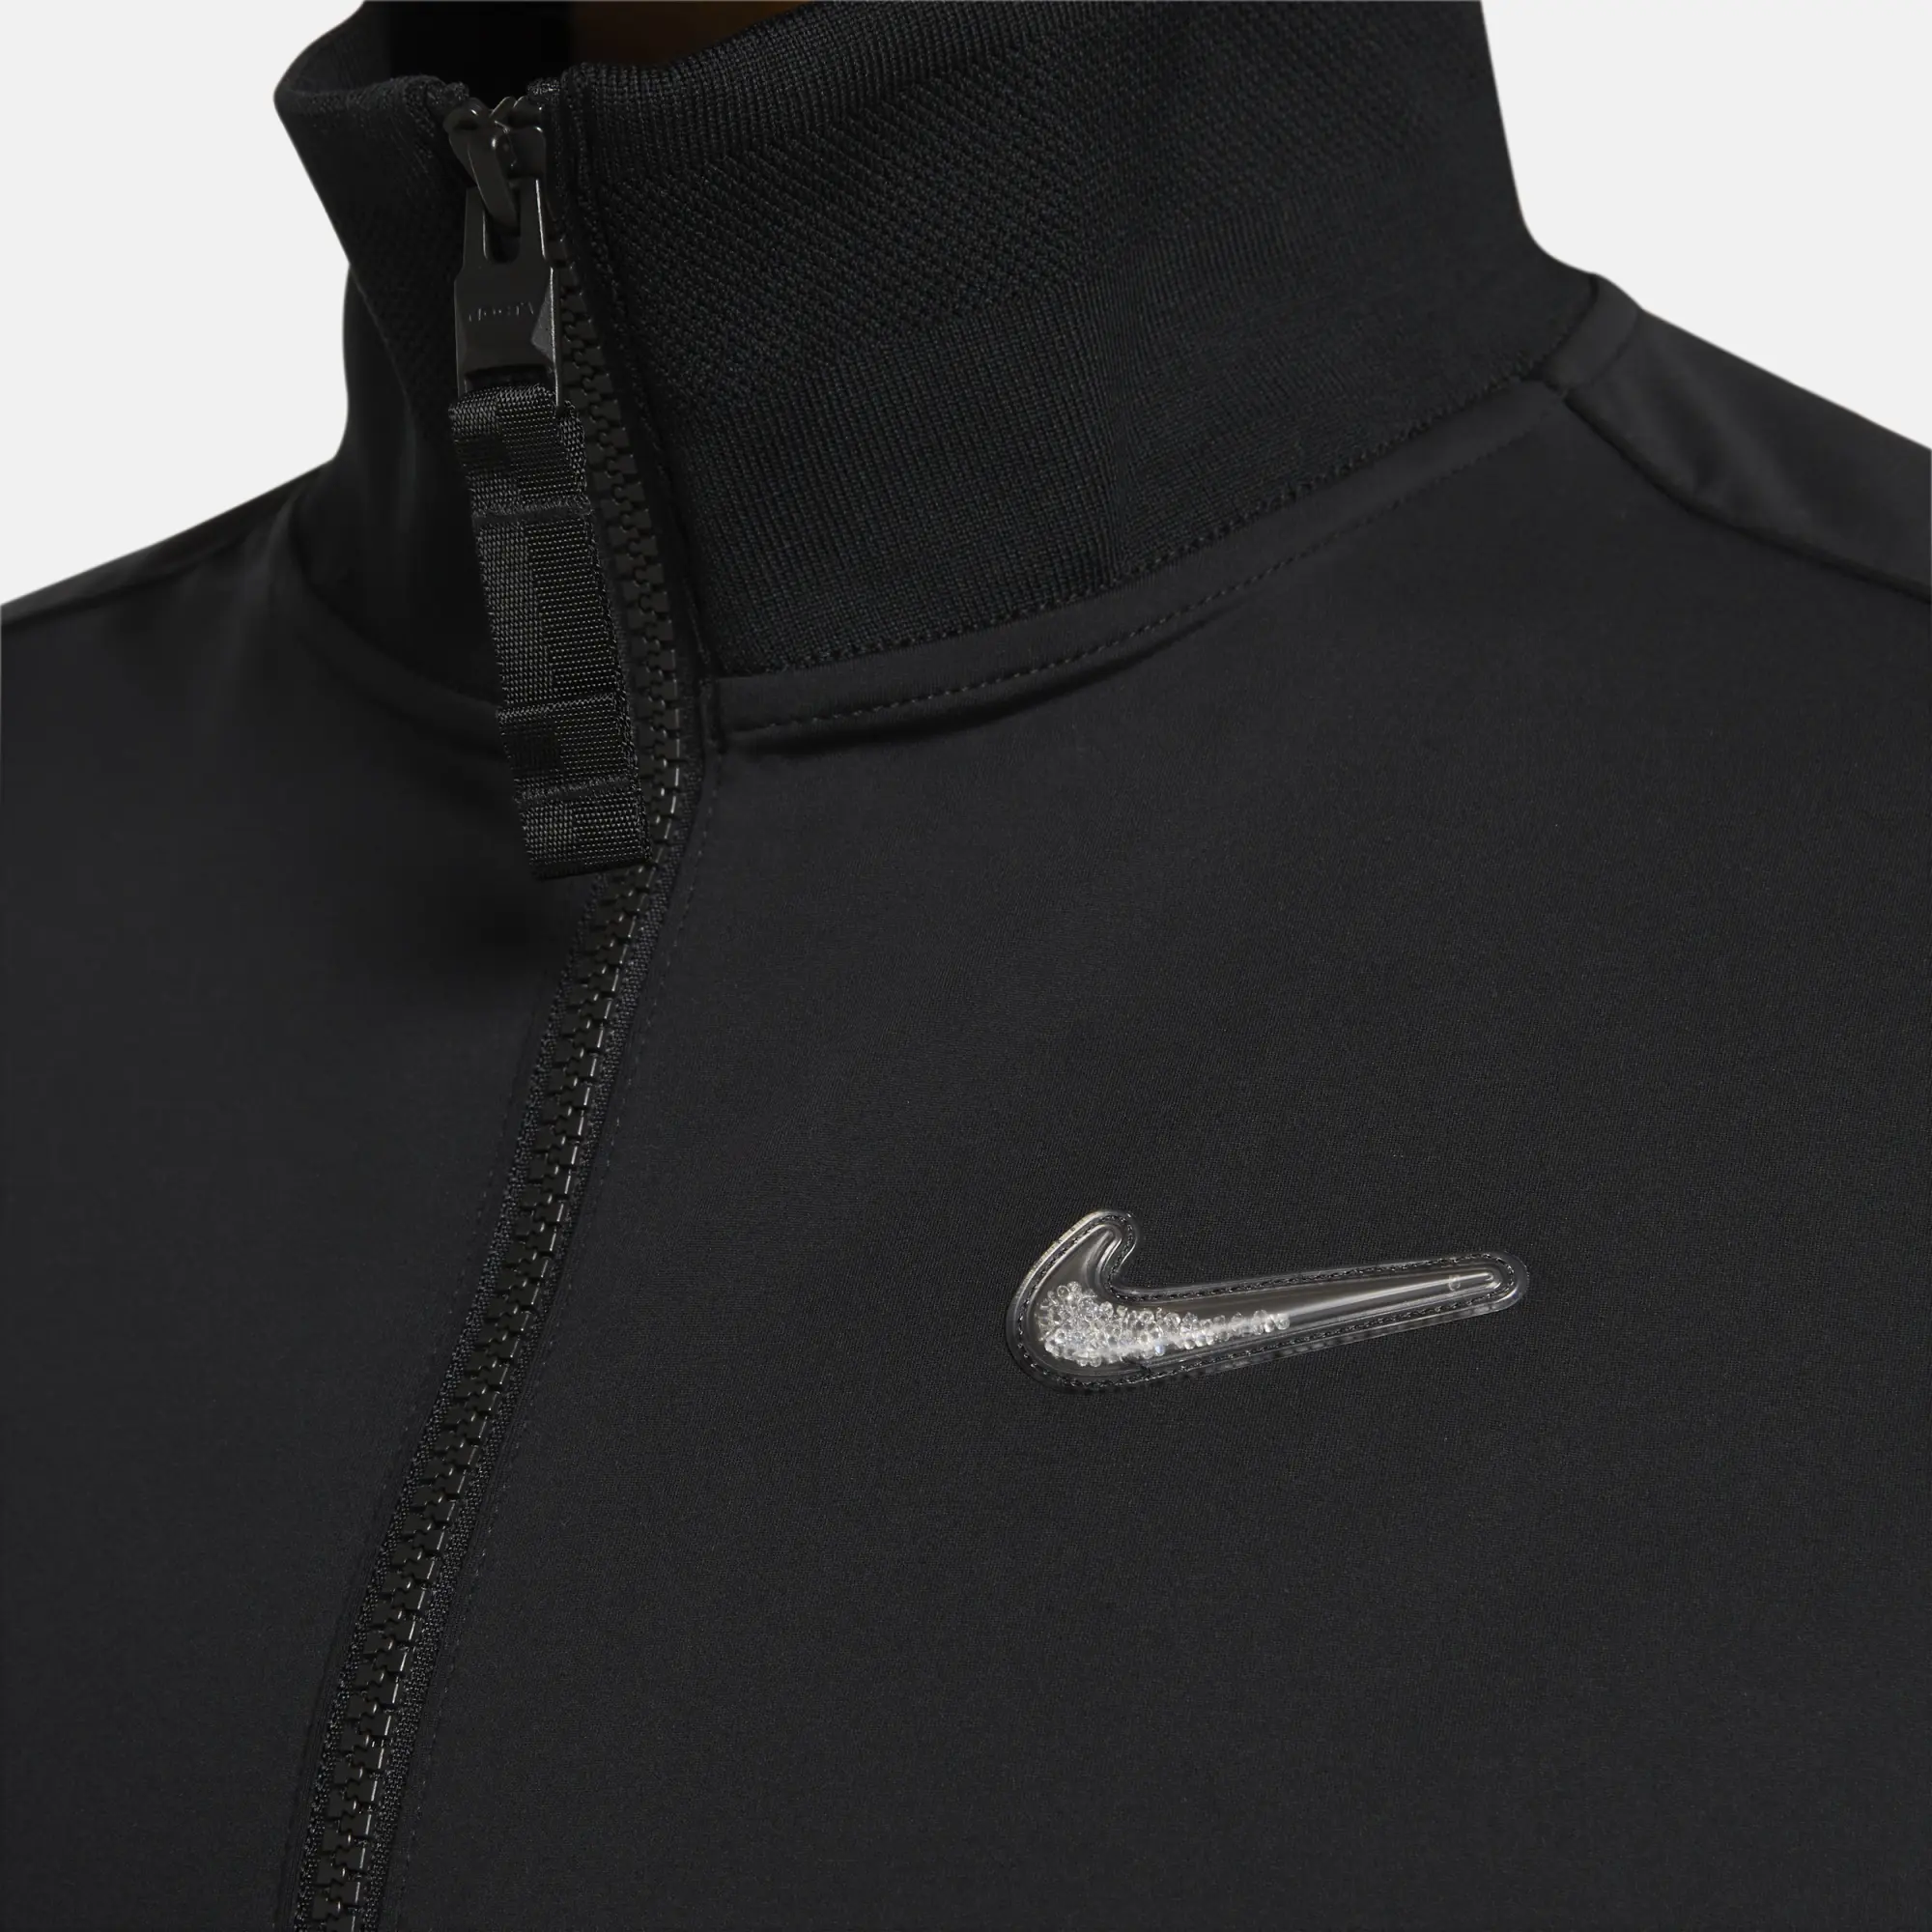 Nike x NOCTA Swarovski Crystals Swoosh Jacket (Asia Sizing) Black ...